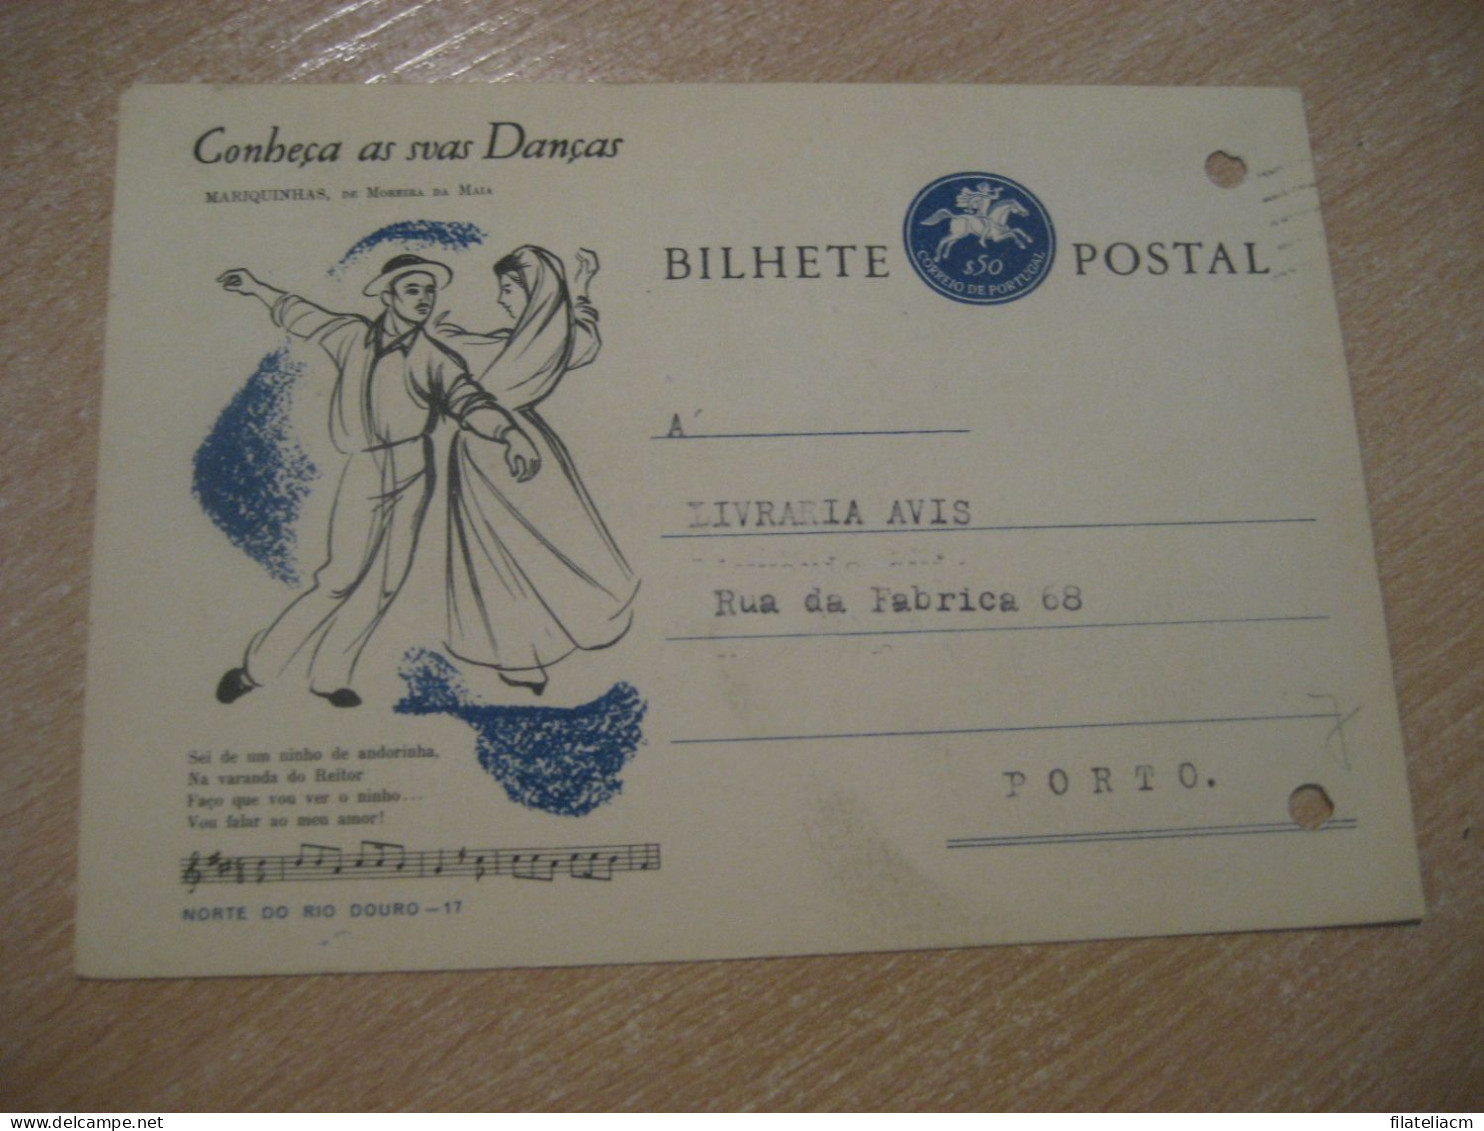 CASTELO BRANCO 1964 To Porto Conheça As Suas Danças Mariquinhas De Moreira Da Maia Bilhete Postal Stationery PORTUGAL - Covers & Documents